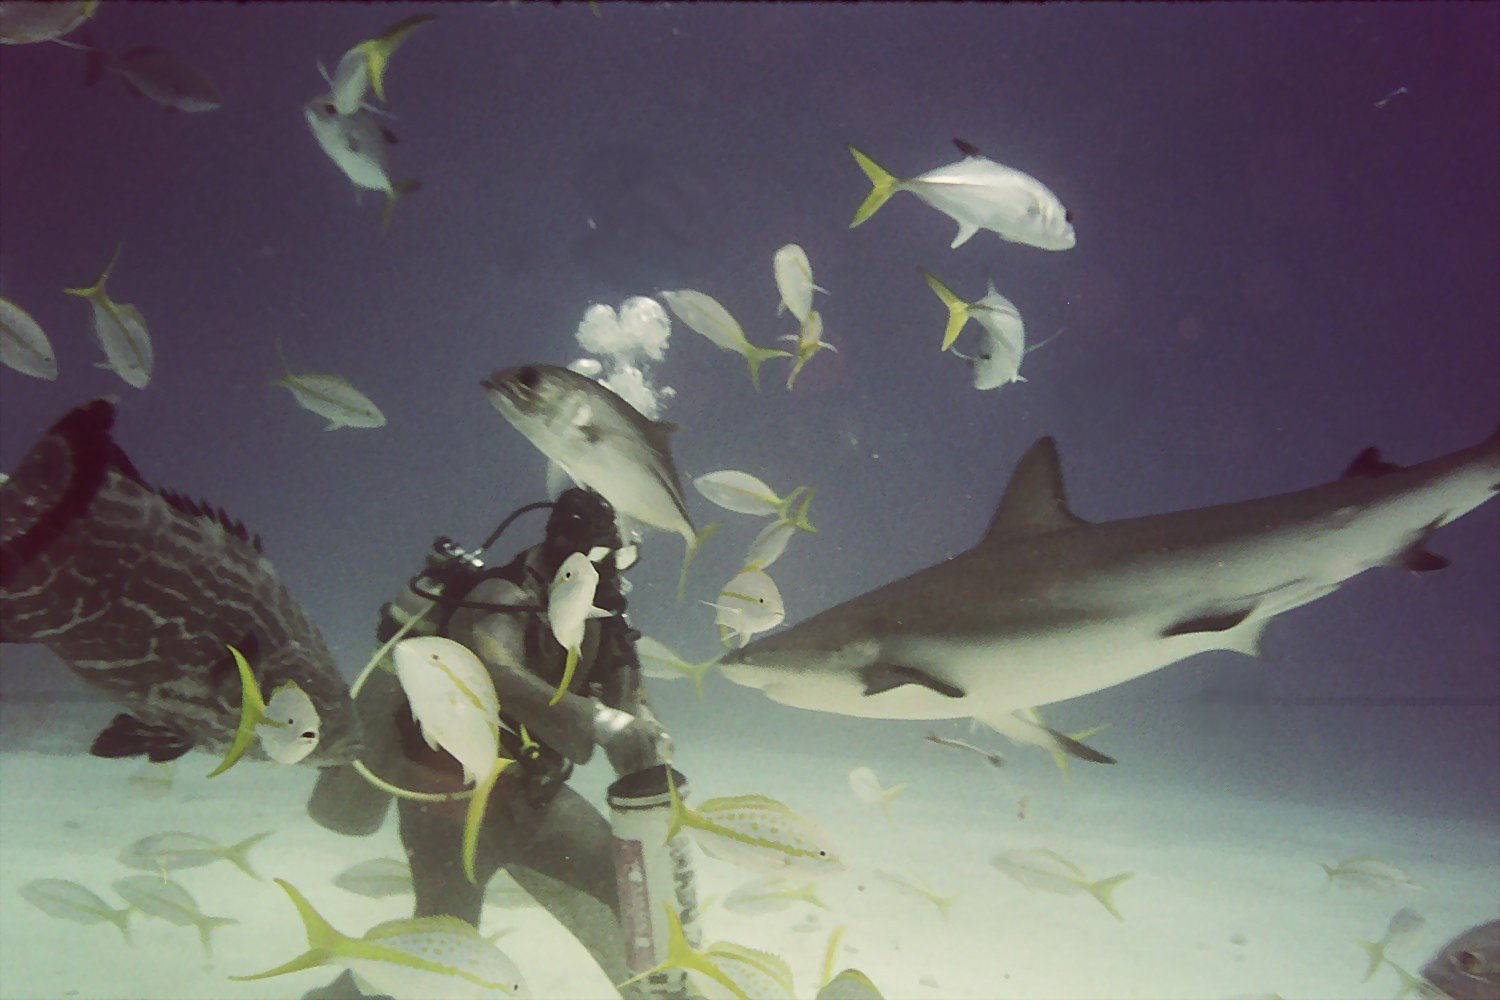 Bahamas Shark Feeding